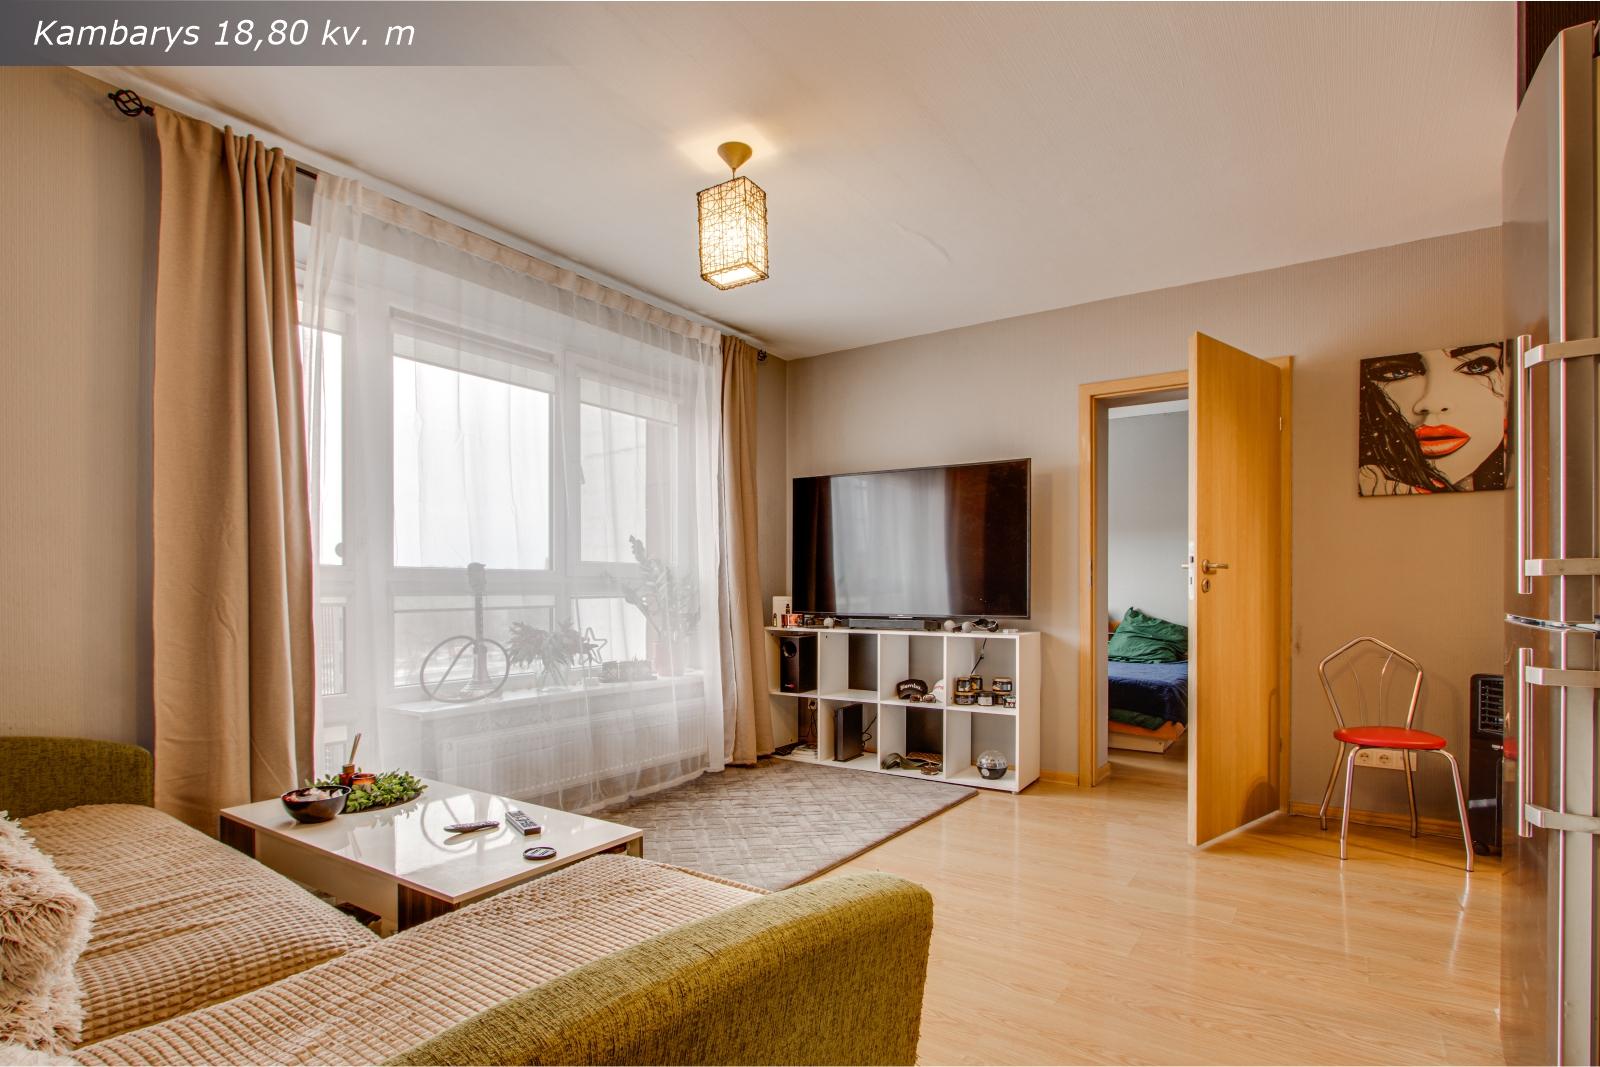 Išnuomojamas tvarkingas 2 kambarių butas Baltijos pr. 12B, Klaipėdoje.